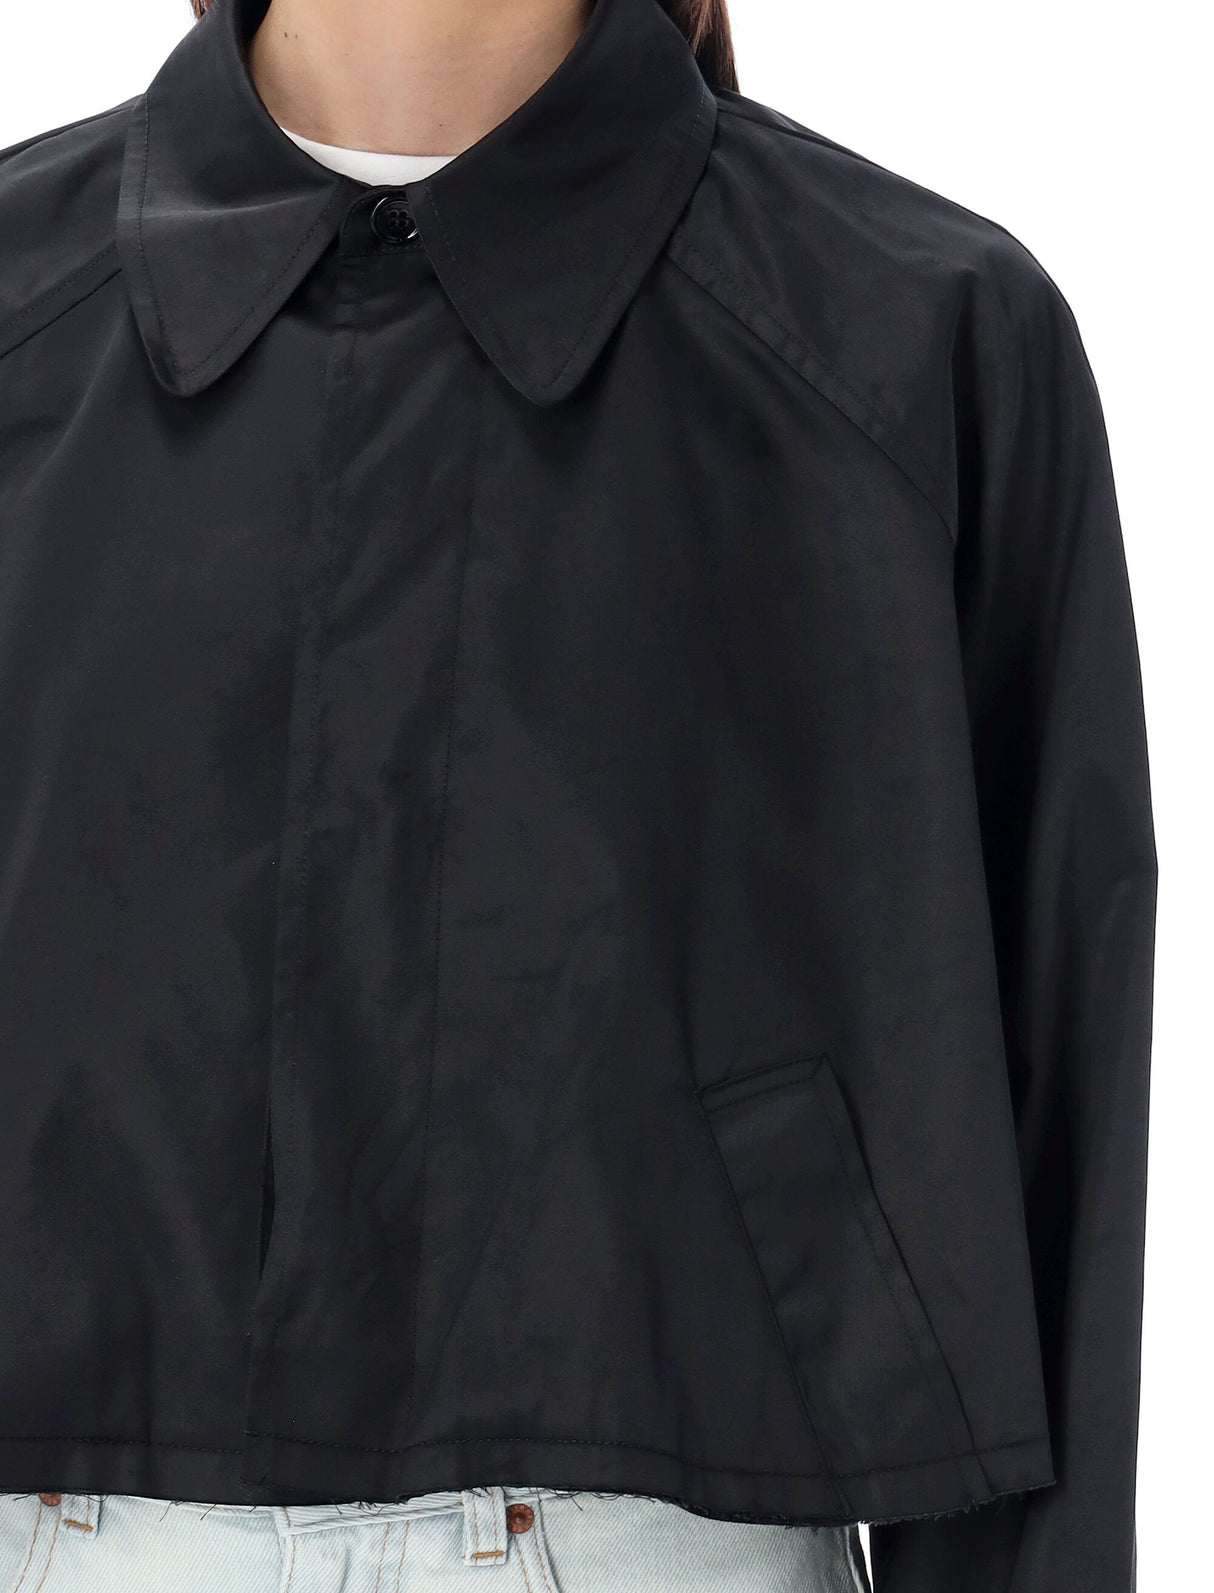 ブラックツイルクロップドジャケット for ウィメン: クラシックカラー、ローヘム、隠しボタン